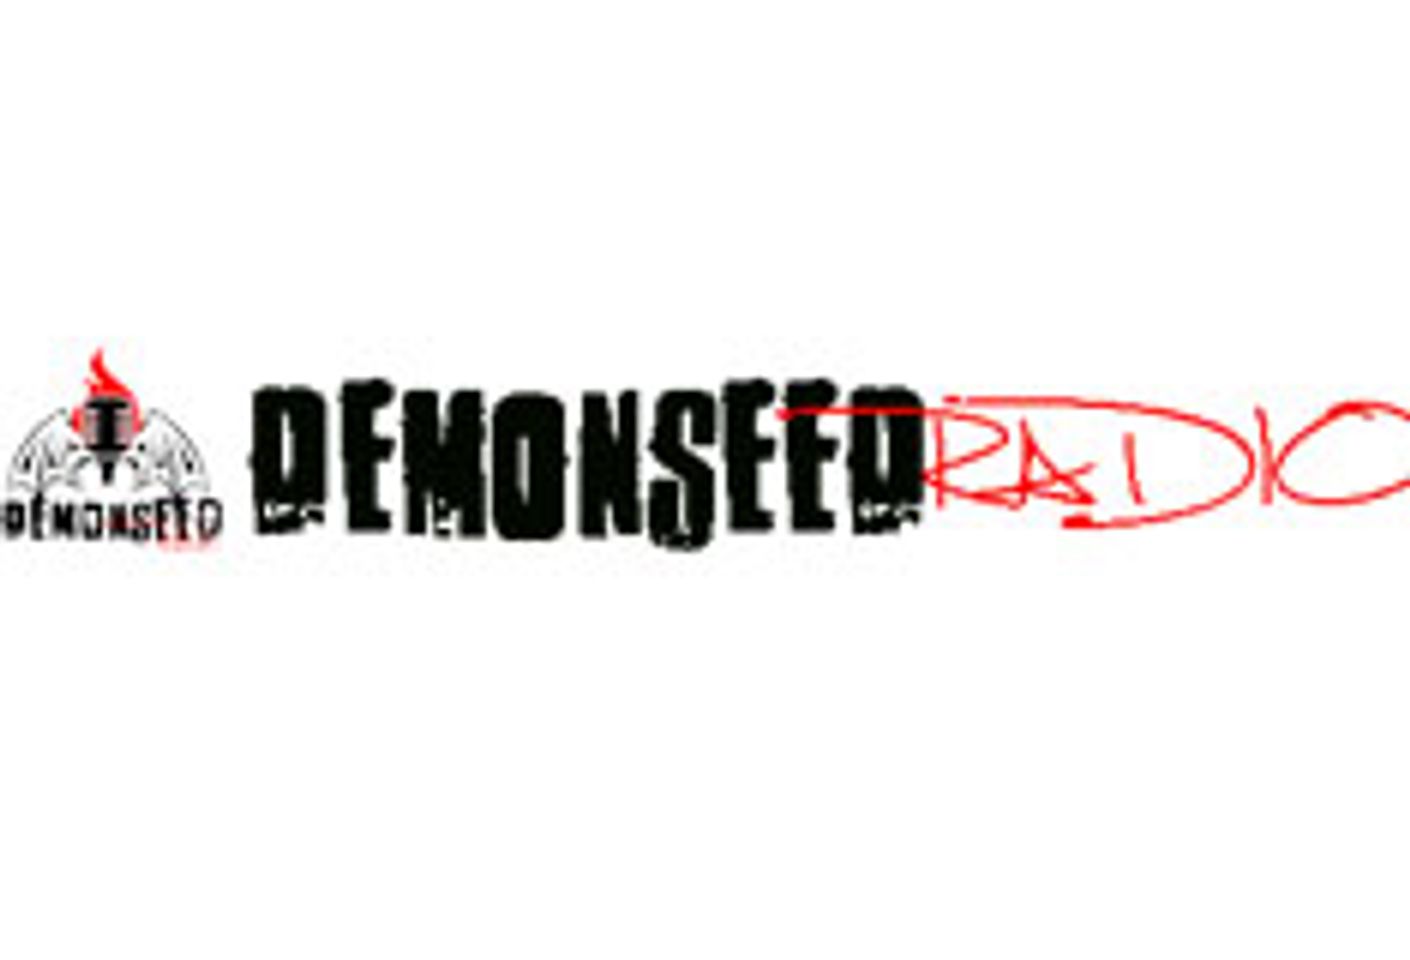 Demon Seed Radio Redesigns Site, Hosting New Year’s Fiesta